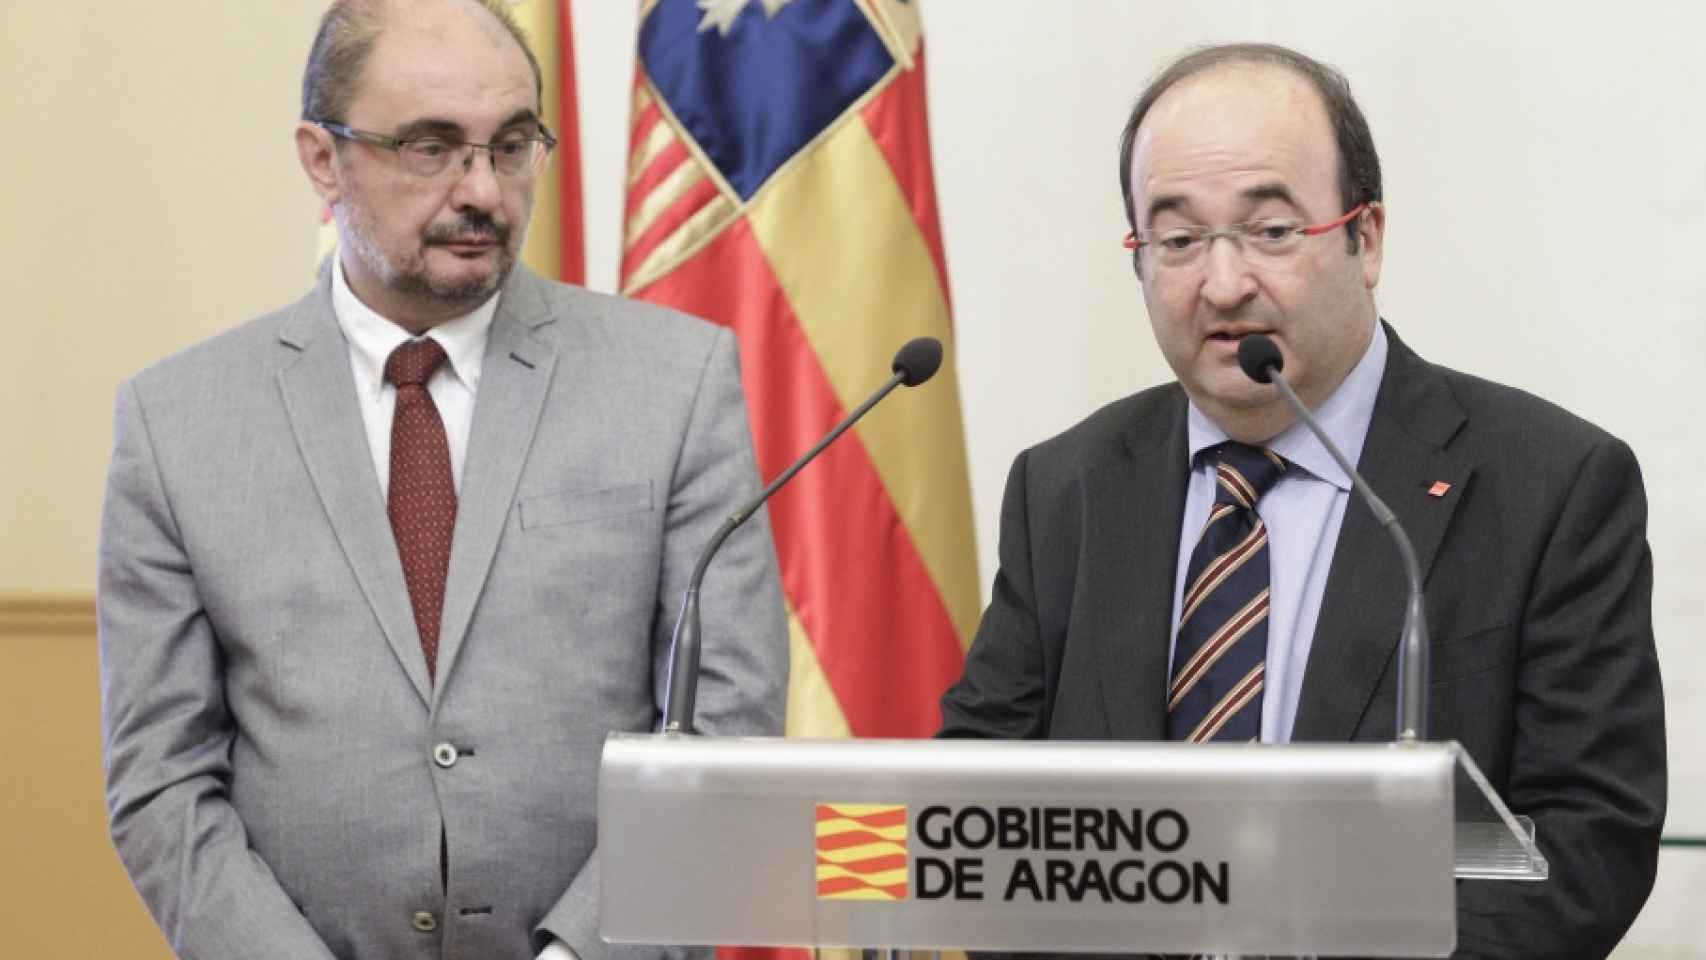 El presidente del Gobierno de Aragón, Javier Lambán, junto al secretario general del PSC, Miquel Iceta.